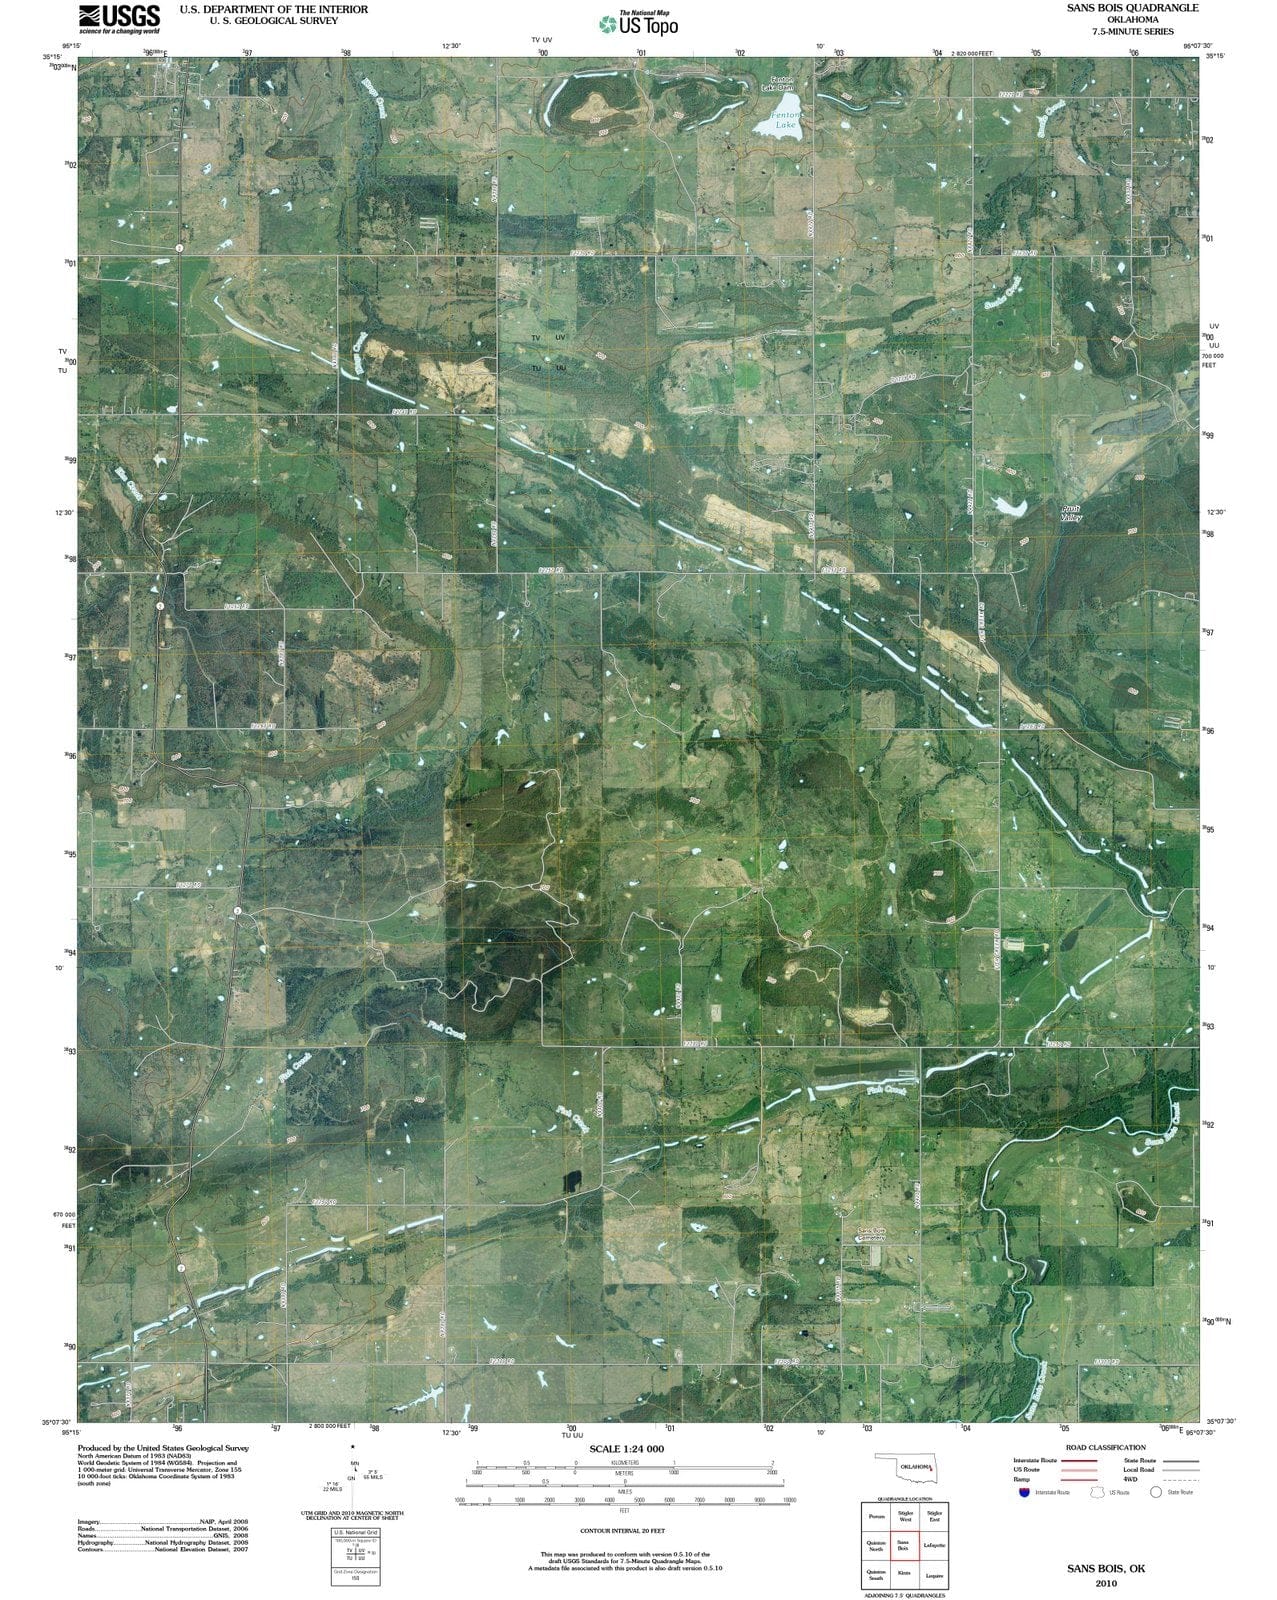 2010 Sans Bois, OK - Oklahoma - USGS Topographic Map